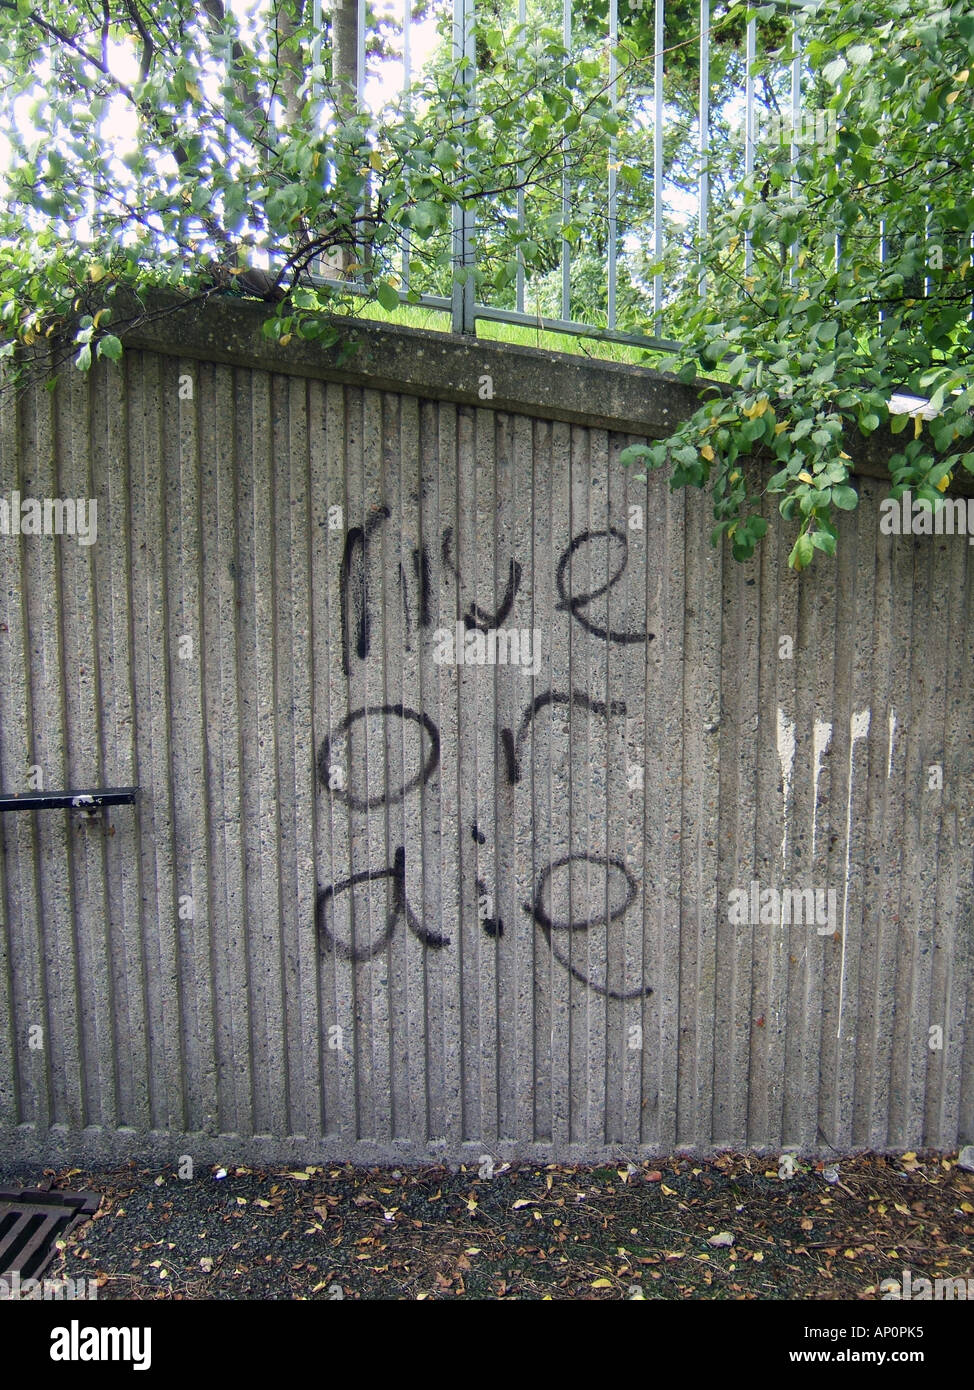 Vivere o morire frase graffiti sulla parete Foto Stock